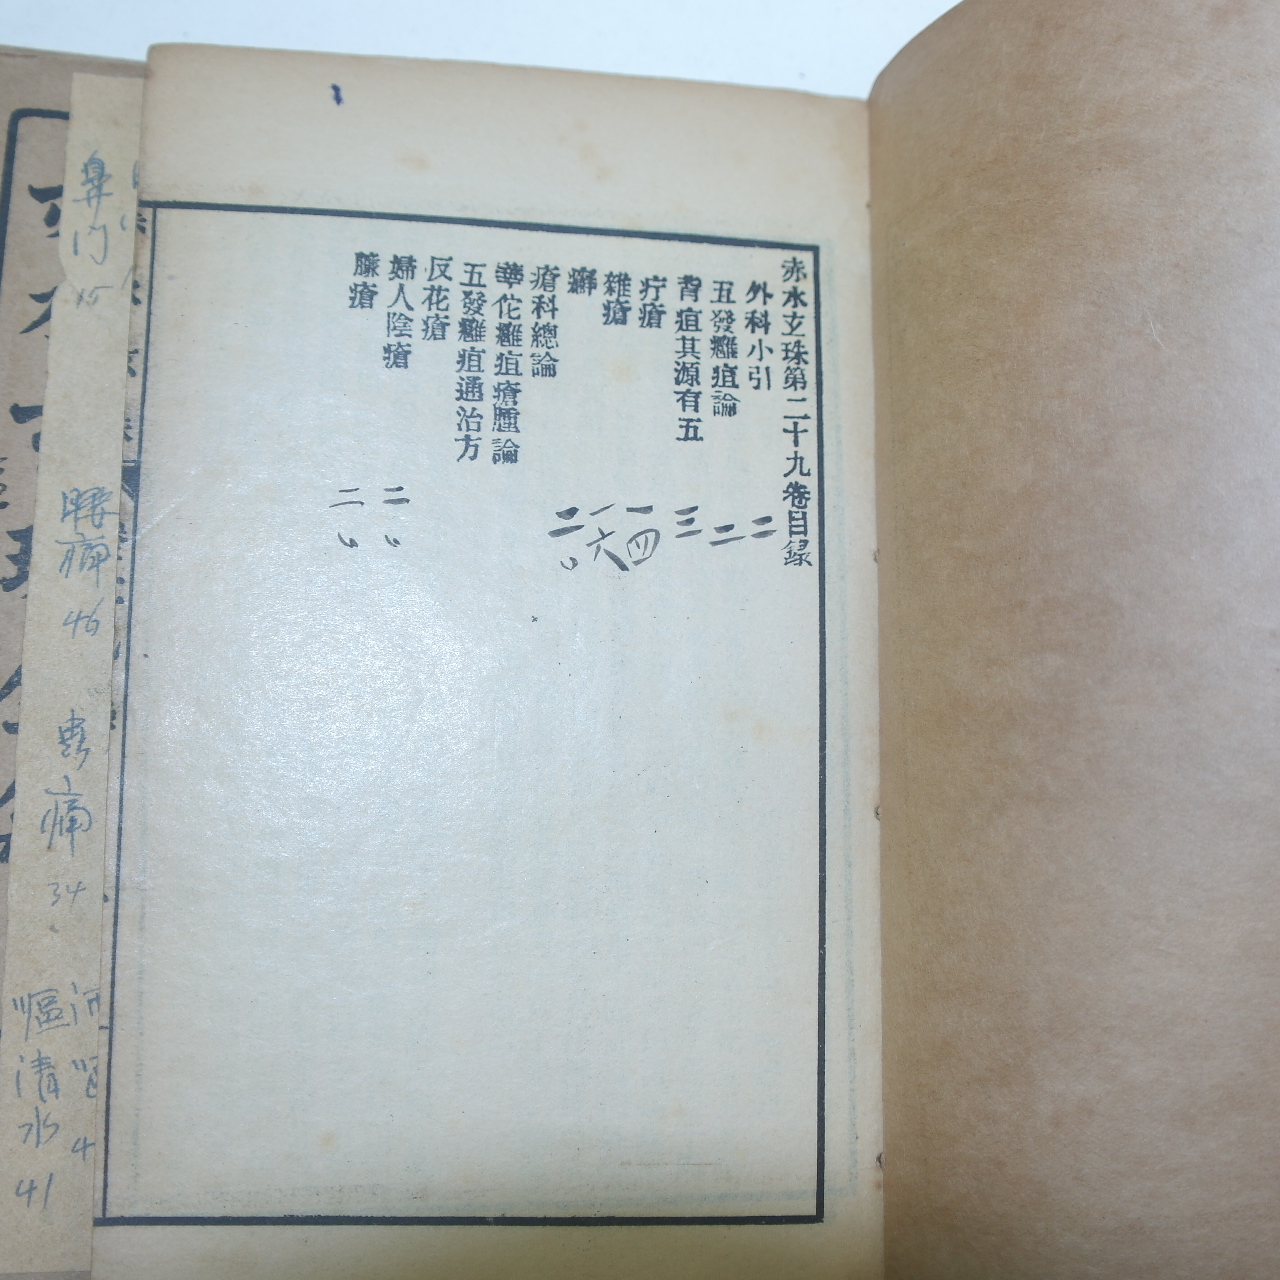 1914년(民國3年) 중국상해본 의서 적수현주전집(赤水玄珠全集) 10책